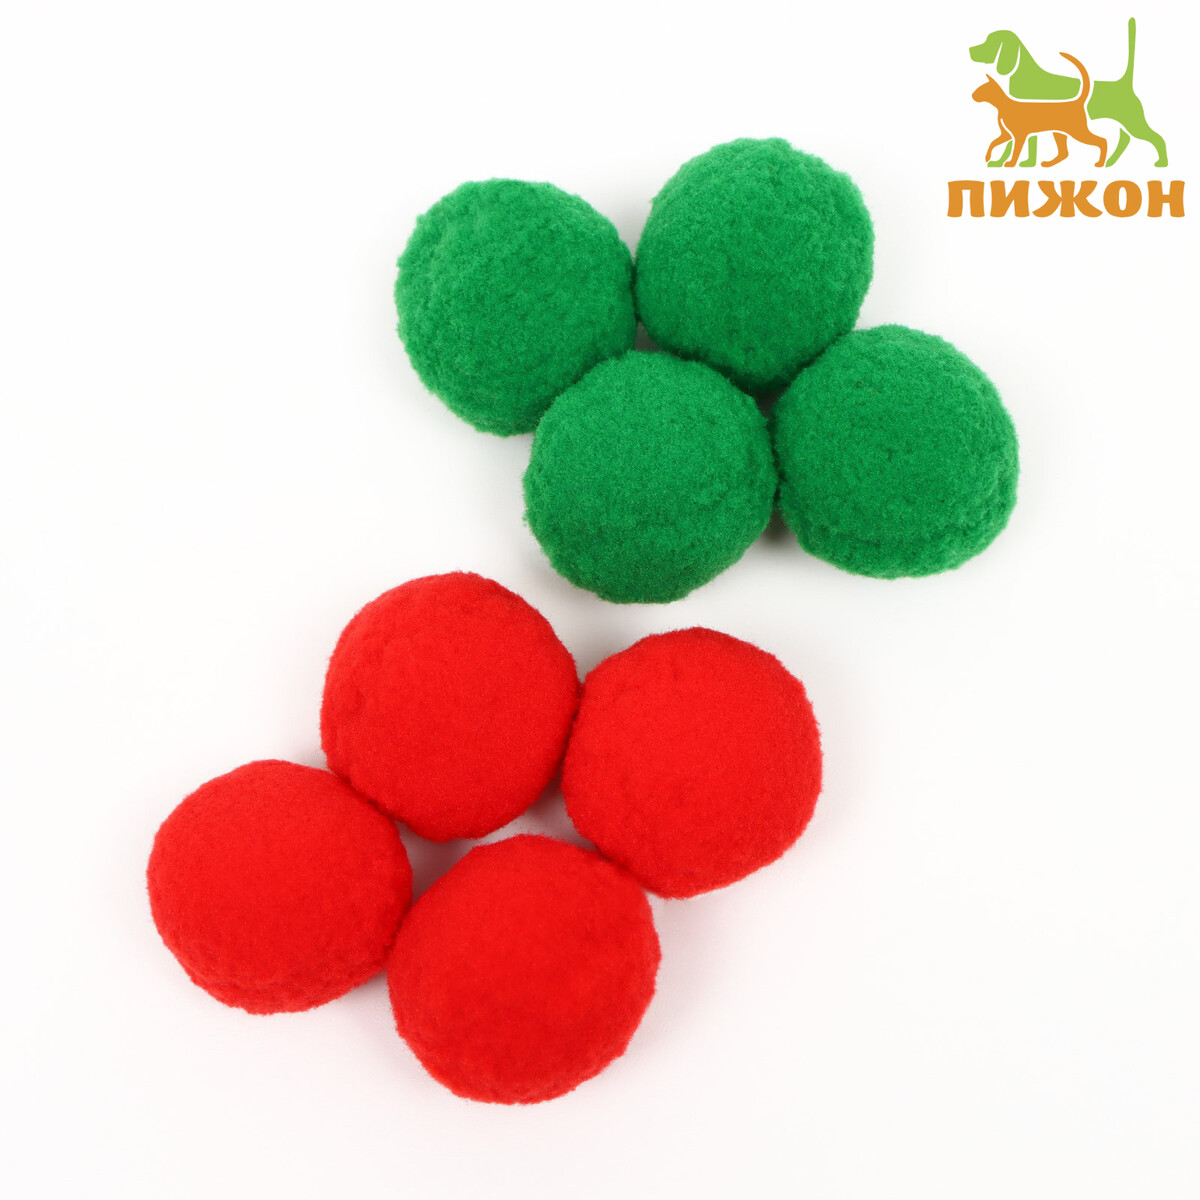 Набор плюшевых шариков для кошек, 8 шт, зеленый/красный guclutoys игрушка набор шариков 7 см 100 шт